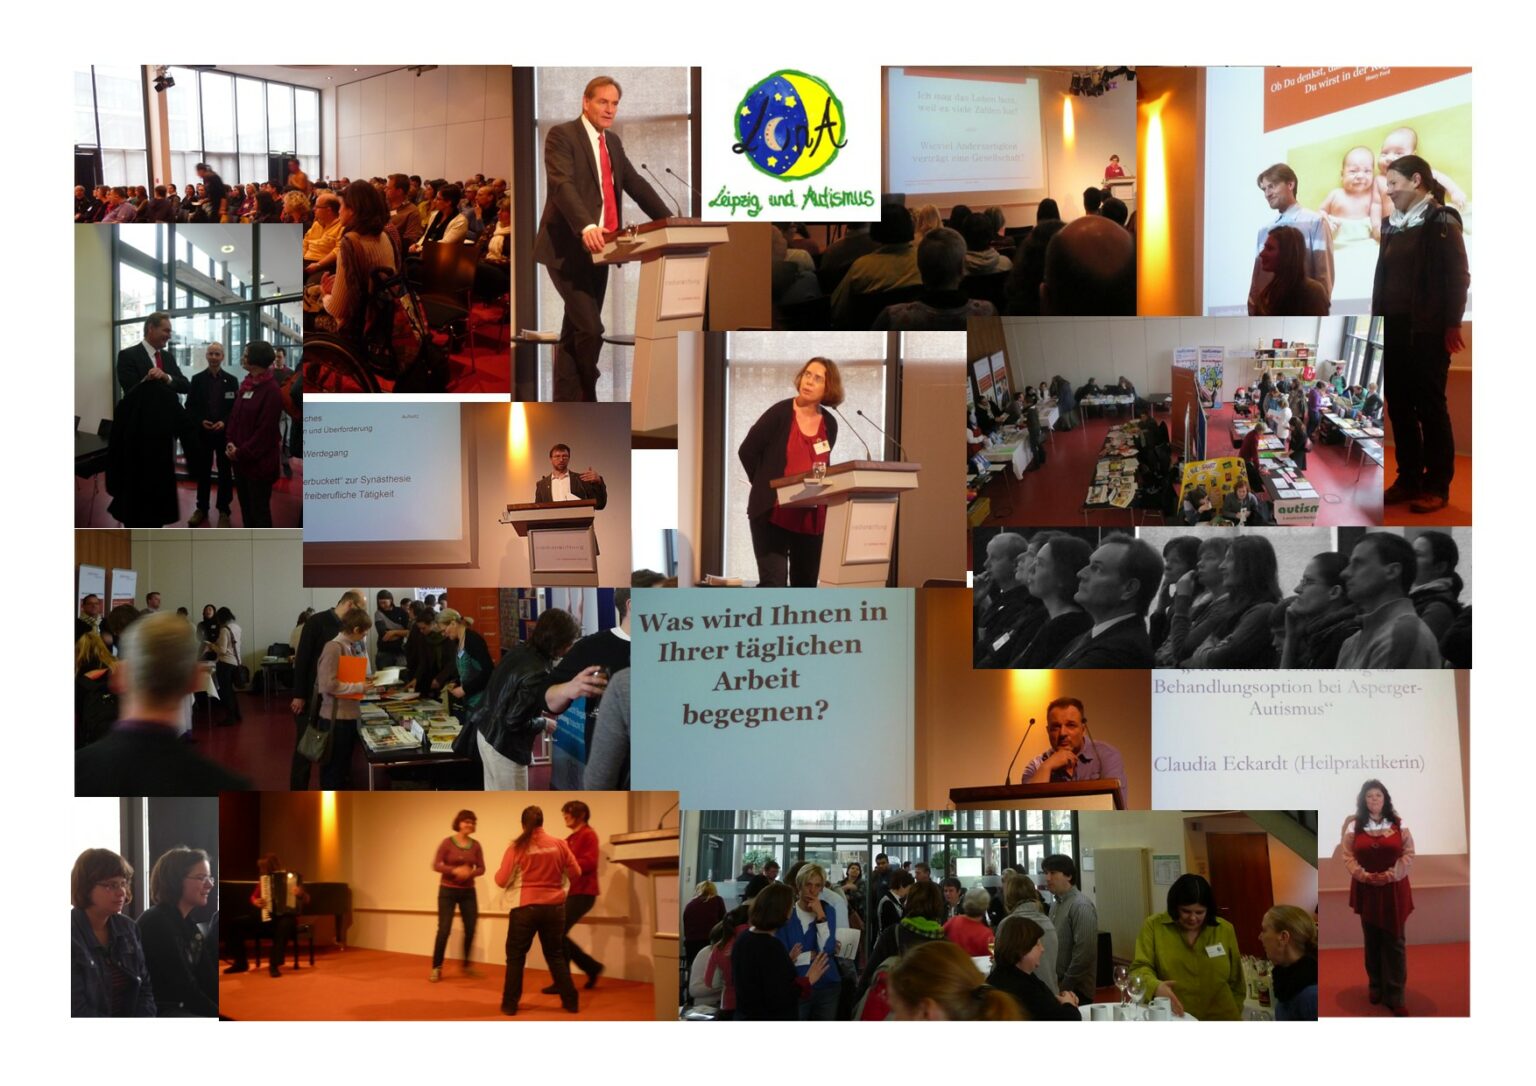 Collage aus Bildern des 1. Leipziger Autismustages 2013. Diese zeitgt Bilder von Rednern, dem Publikum und Tagungsveranstaltungen.